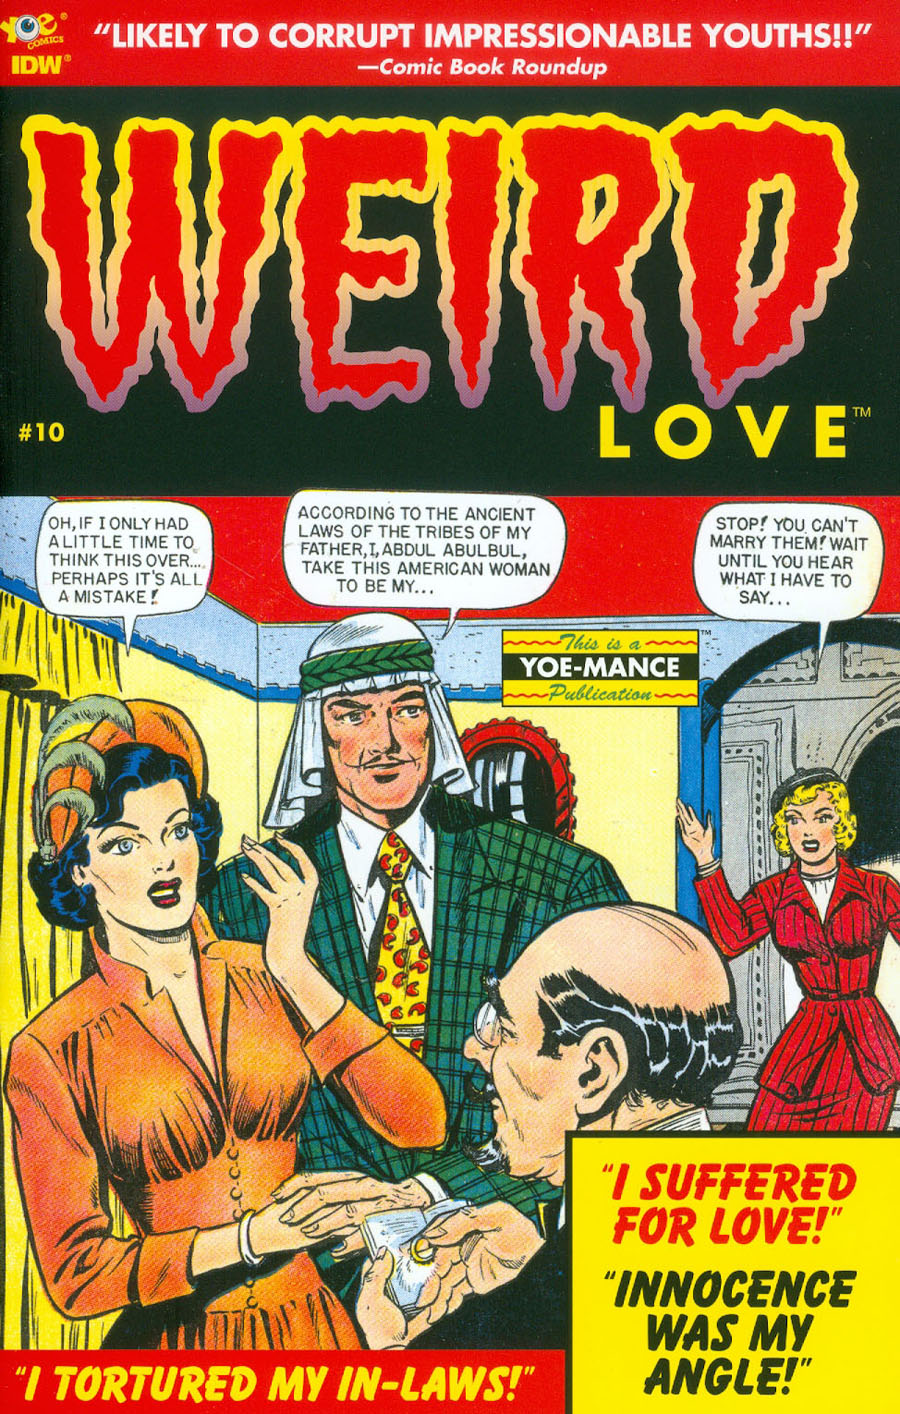 Weird Love #10